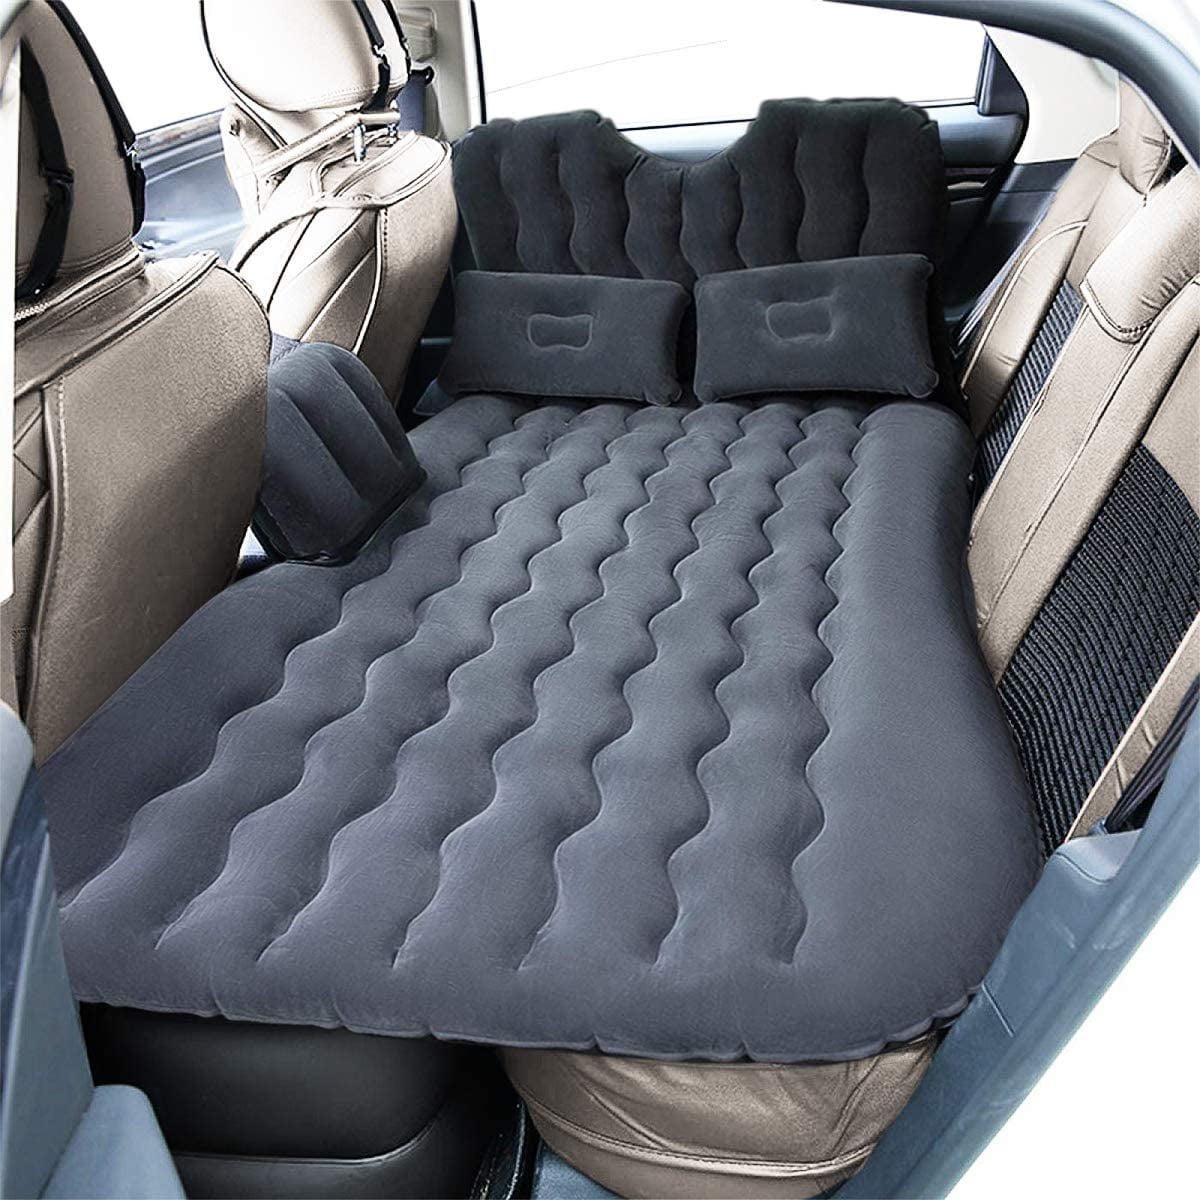 Car SUV Air Bed Sleep Travel Inflatable Mattress Seat Cushion Mat Camping w Pump 